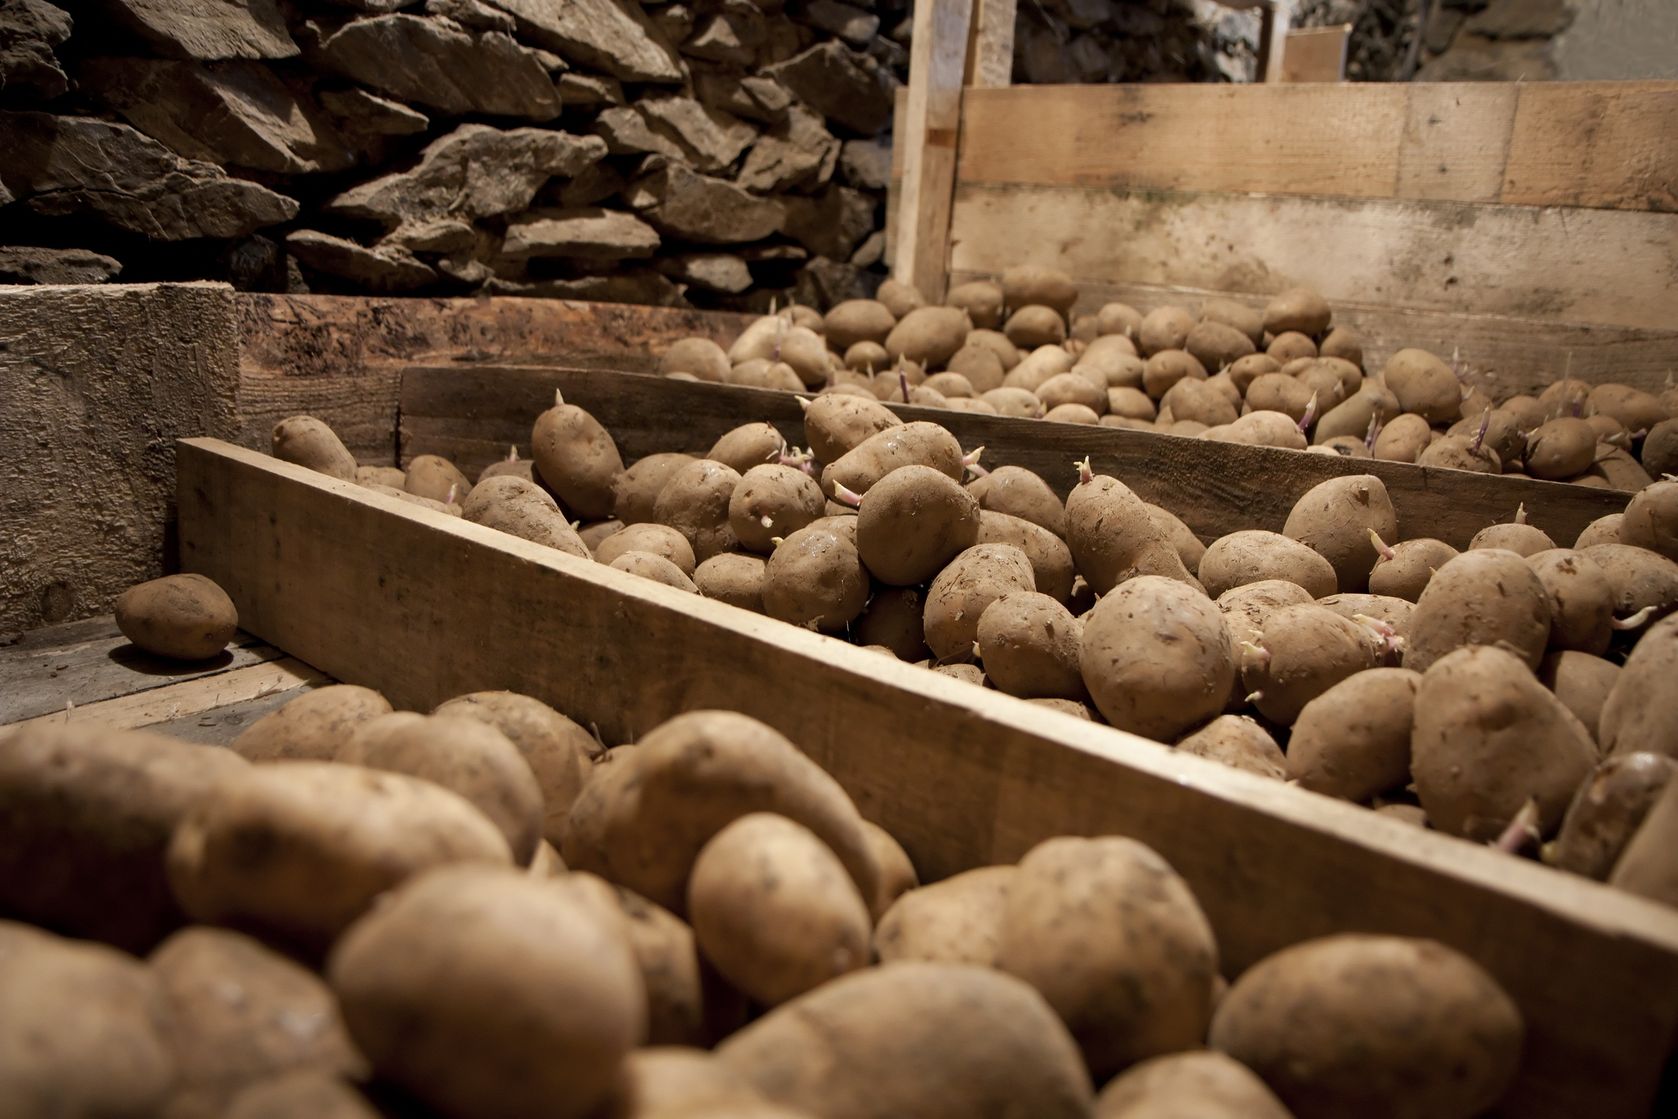 Два урожая картофеля за сезон: как получить второй урожай за год